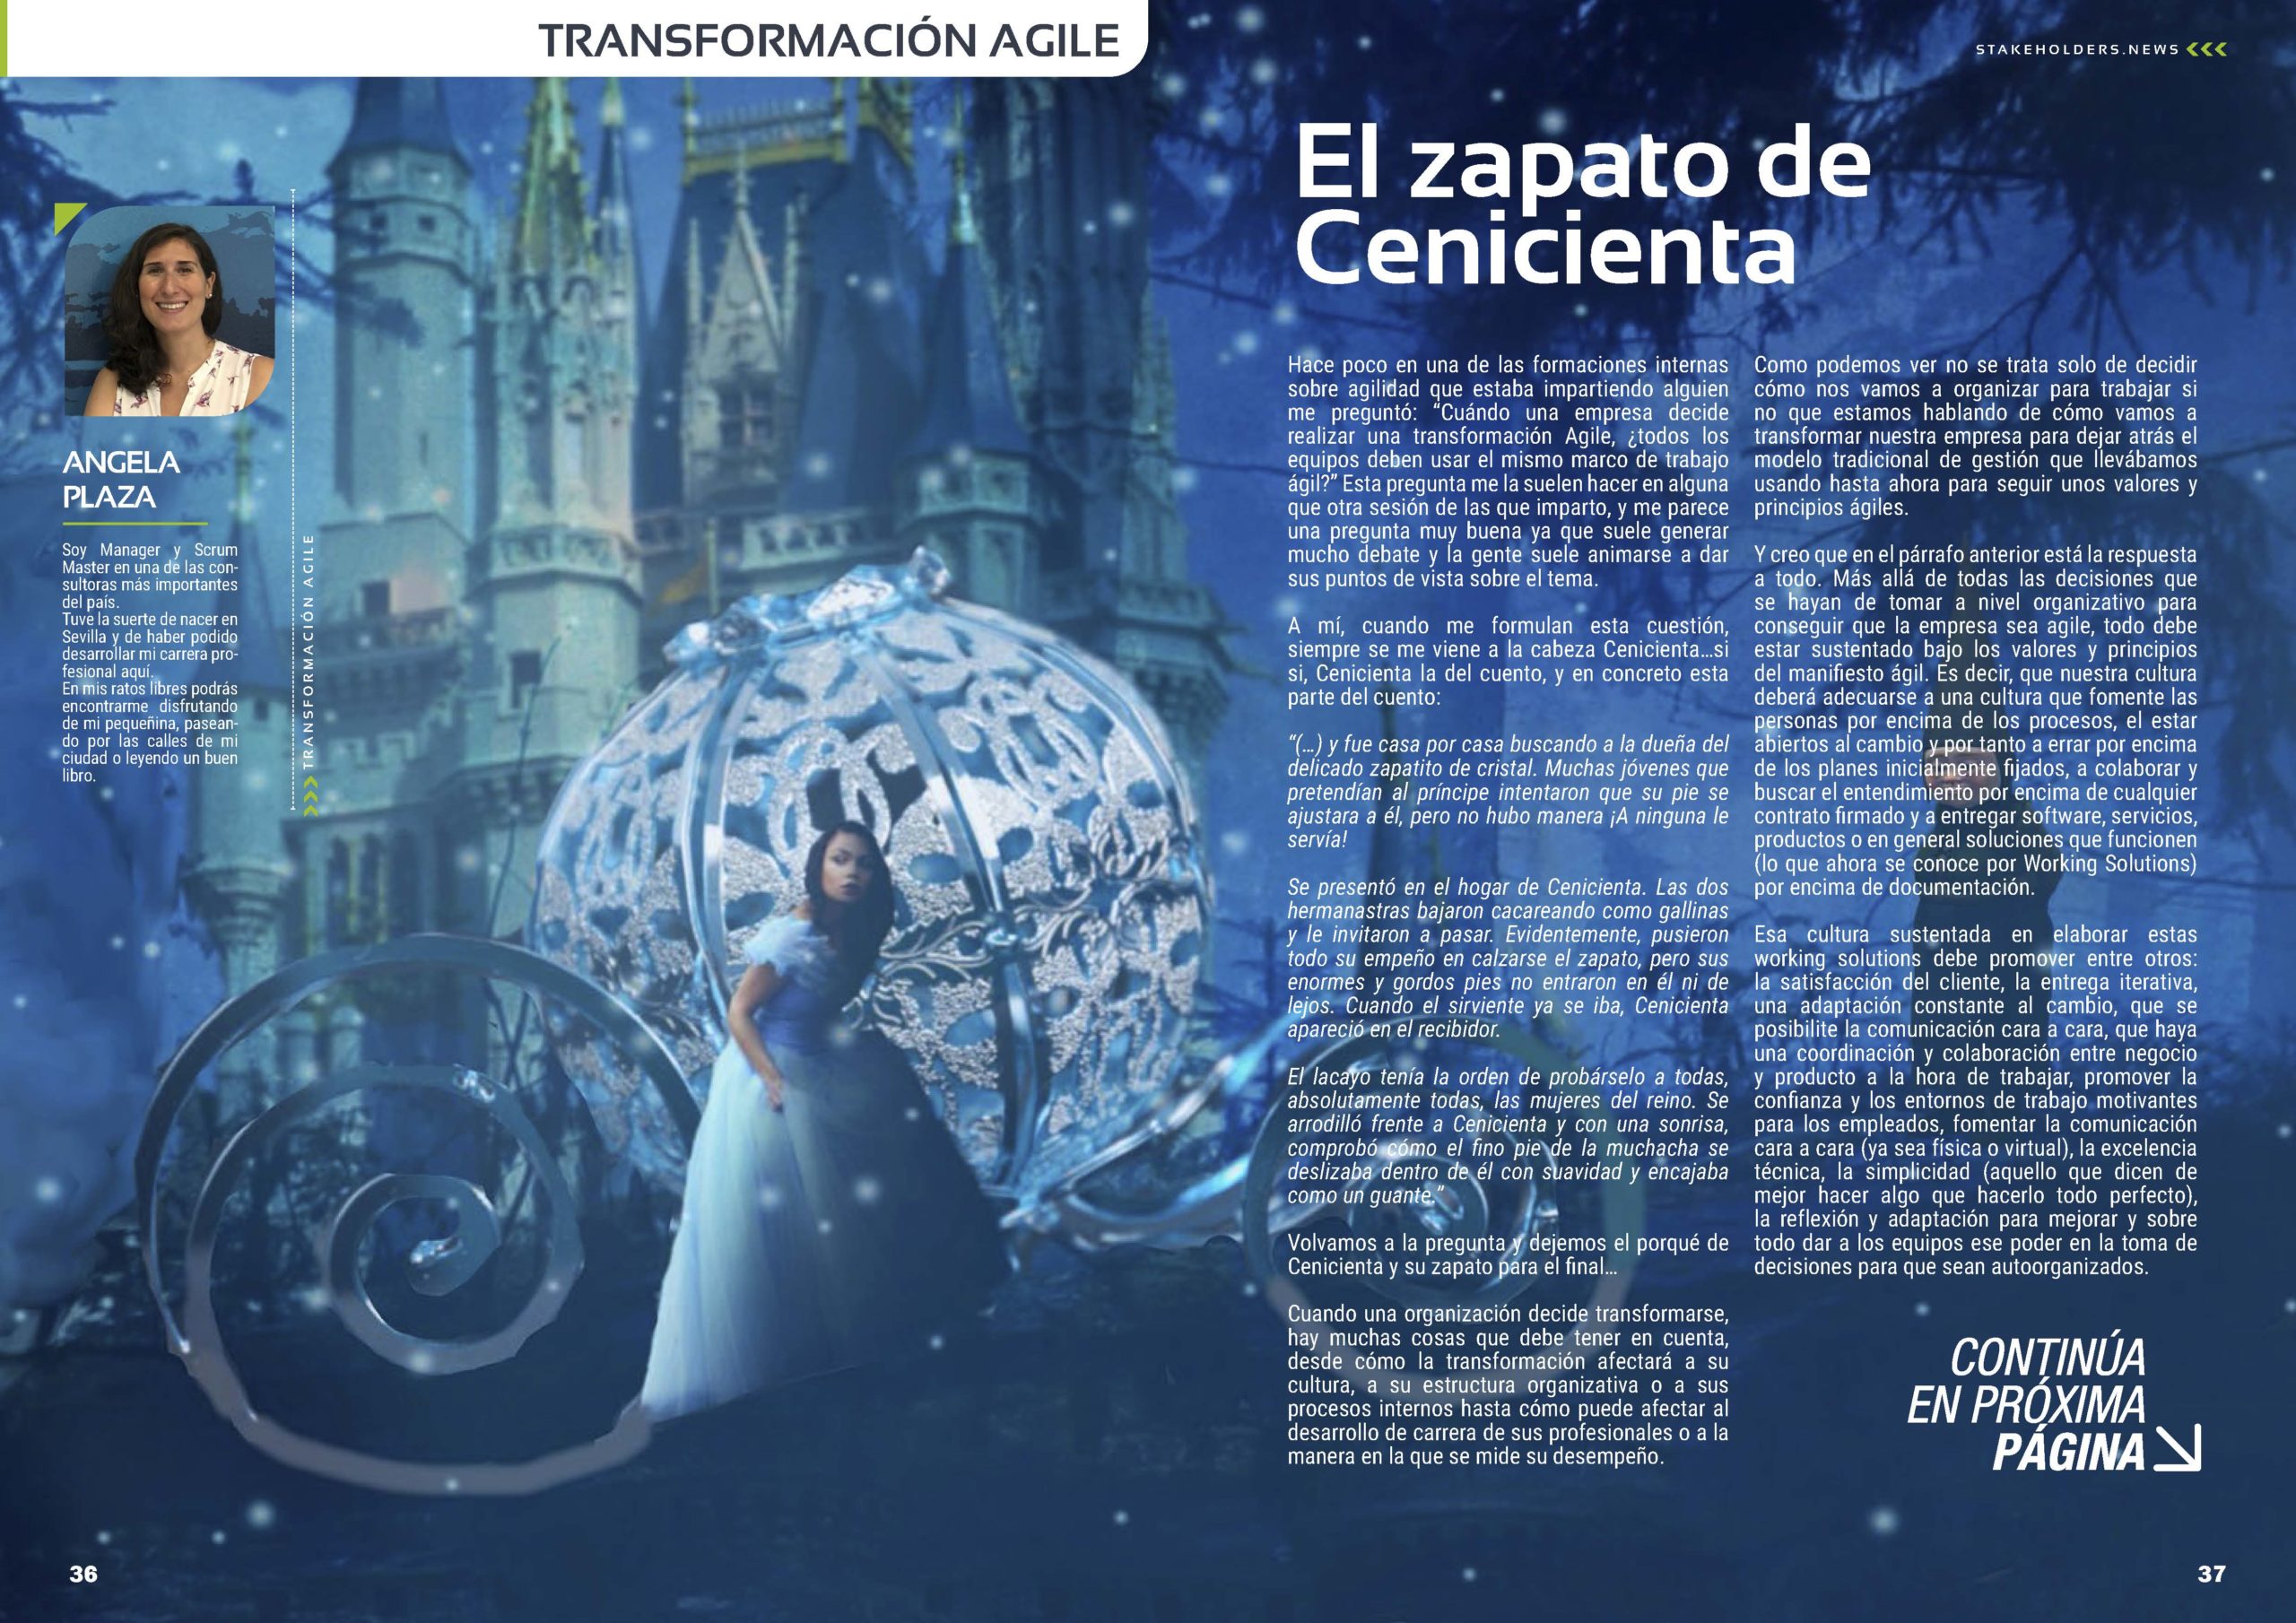 Articulo "El zapato de Cenicienta" de Ángela Plaza Lora en la Sección "Transformación Agile" de la Revista Stakeholders.news